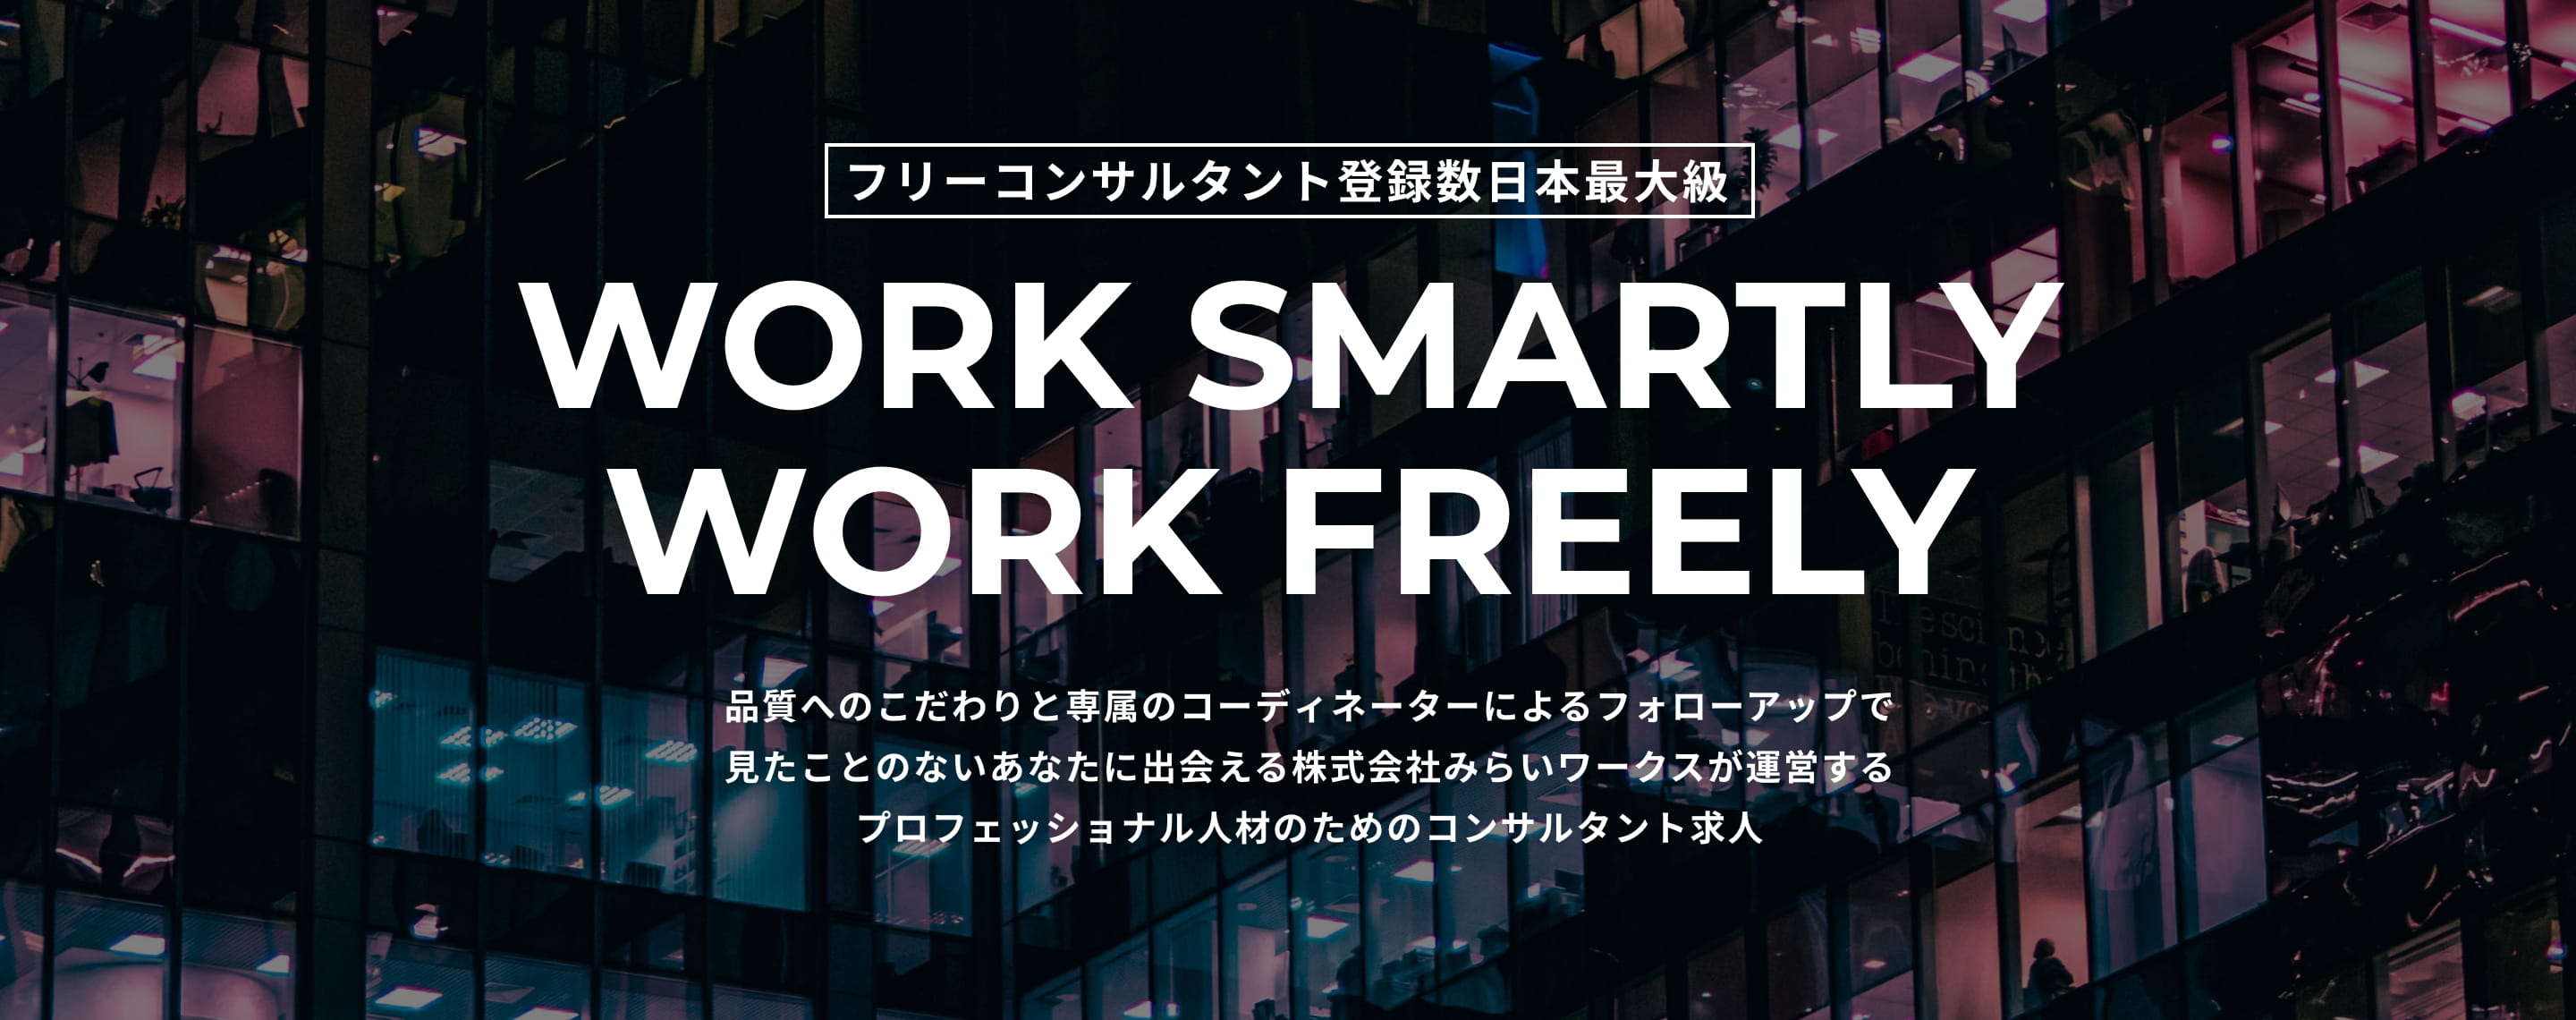 フリーコンサルタント登録数日本最大級 WORK SMARTLY WORK FREELY 品質へのこだわりと専属のコーディネーターによるフォローアップで見たことのないあなたに出会える株式会社みらいワークスが運営するプロフェッショナル人材のためのコンサルタント求人